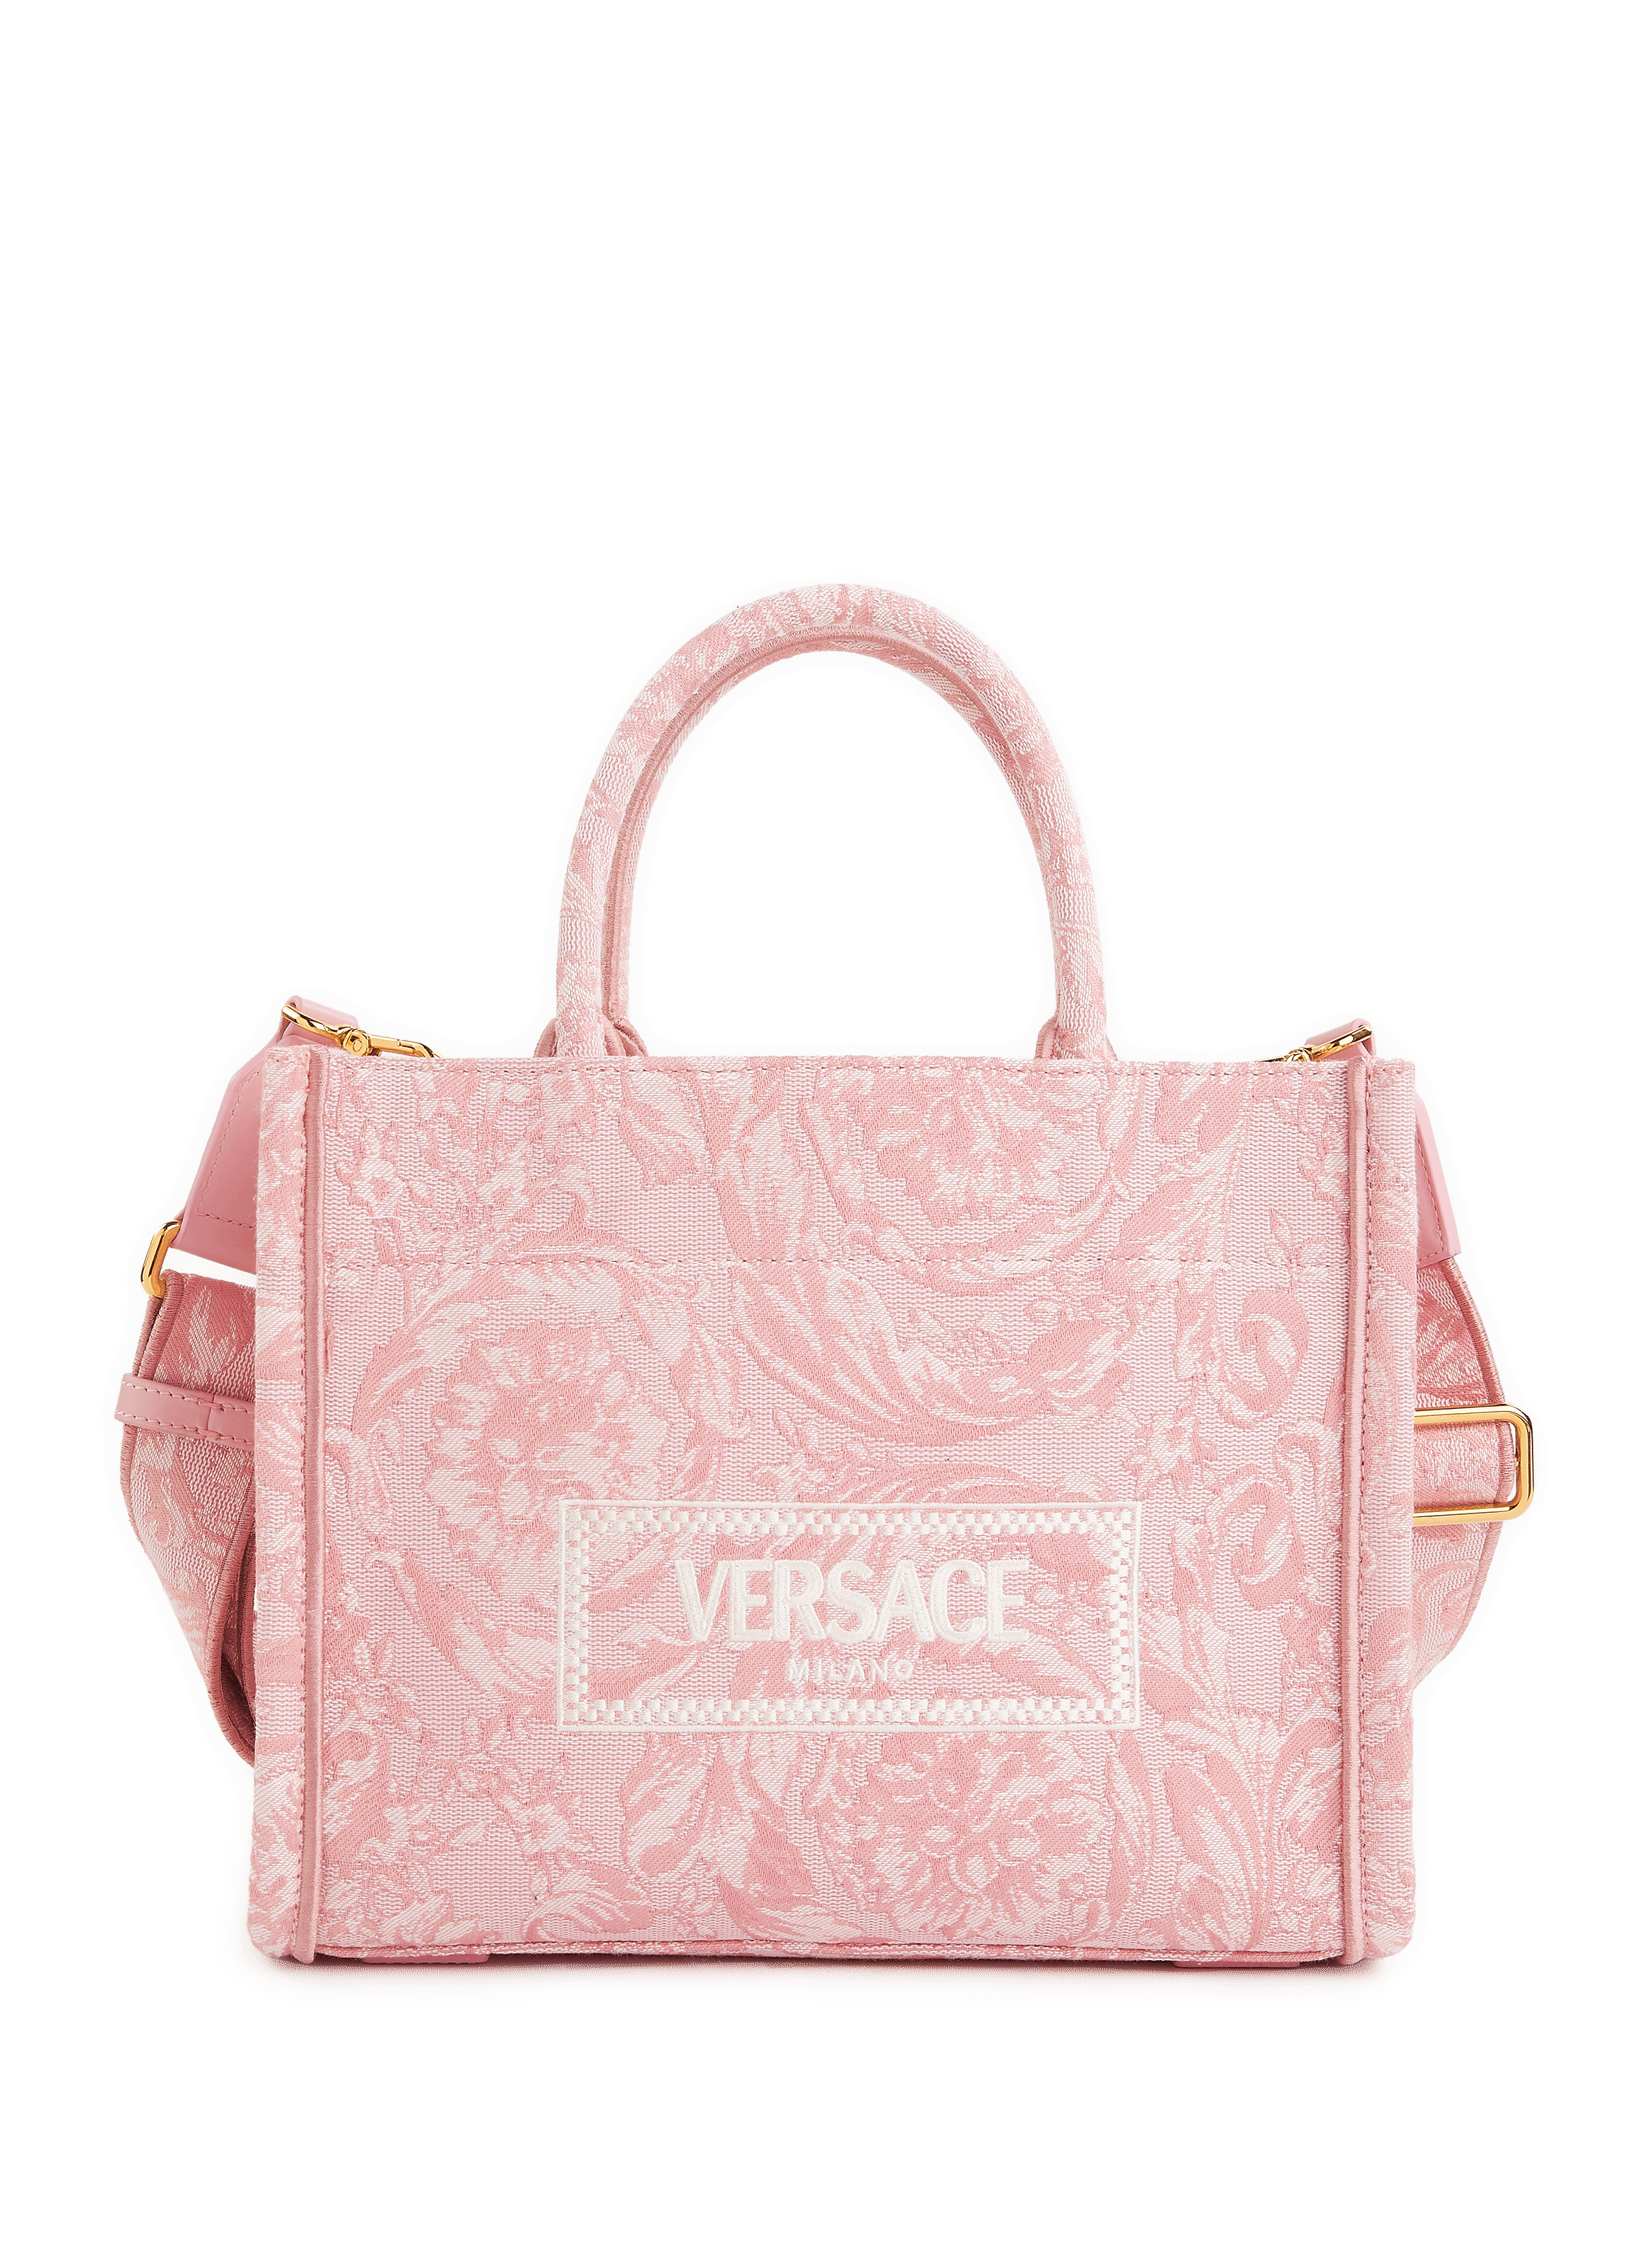 Shop VERSACE Women's Pink Bags | BUYMA